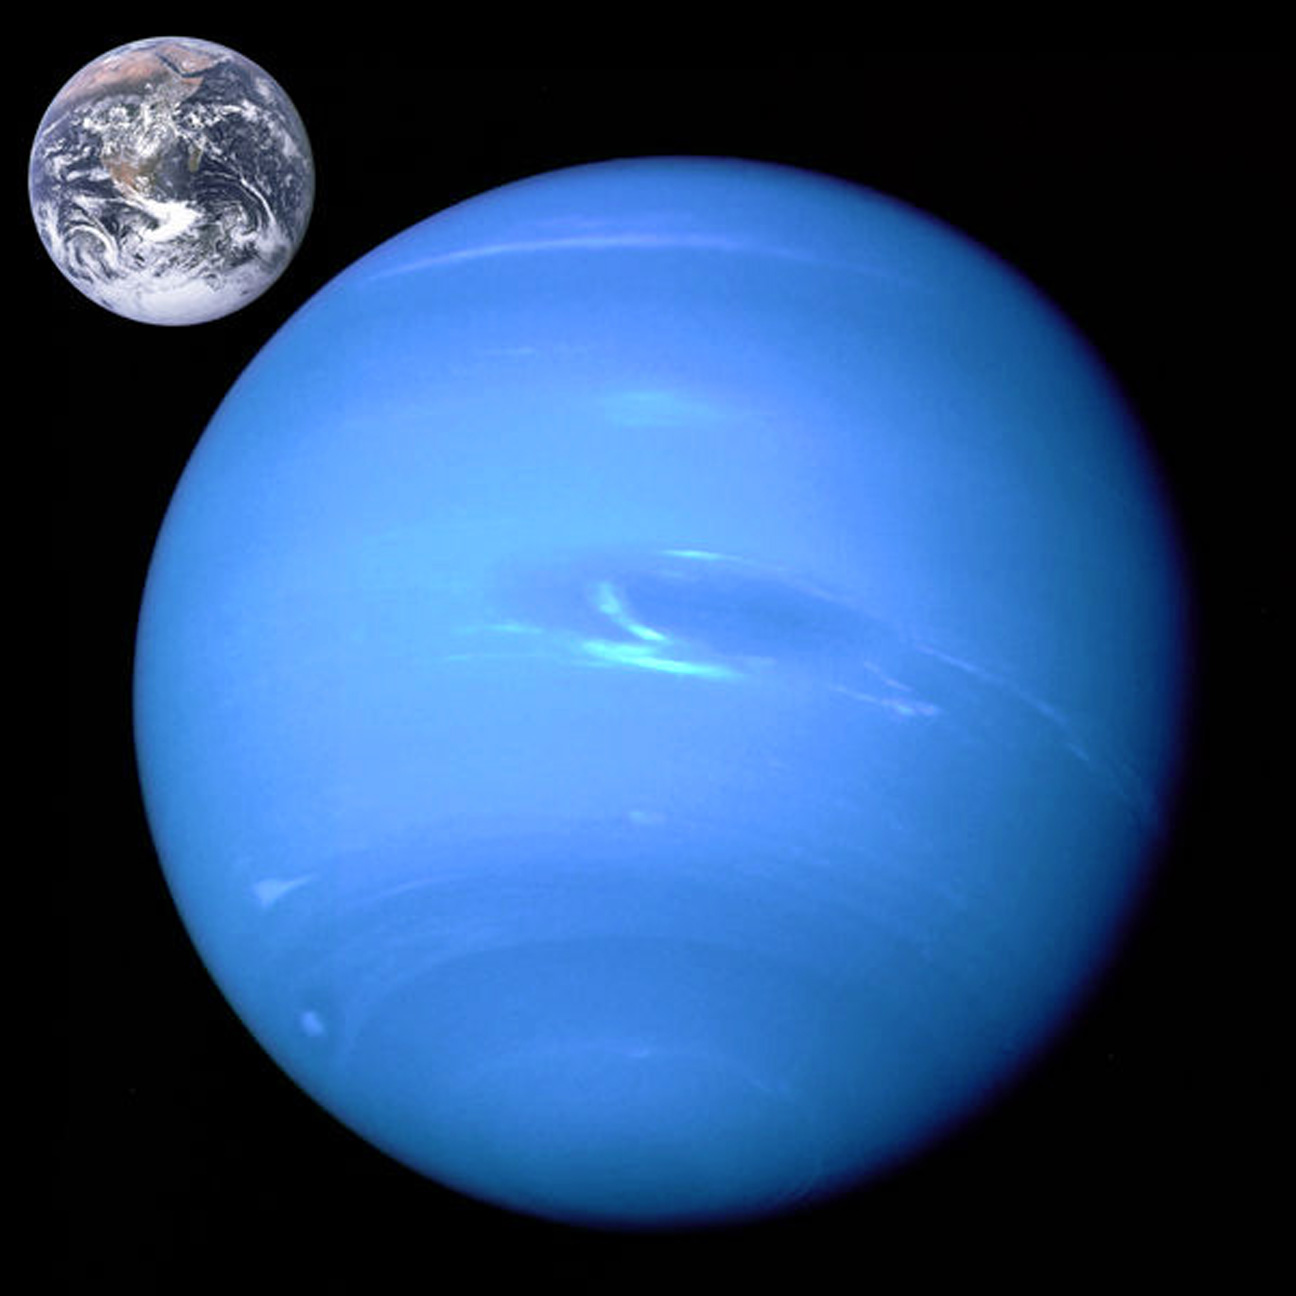 Neptune_Earth_size_comparison2.jpg